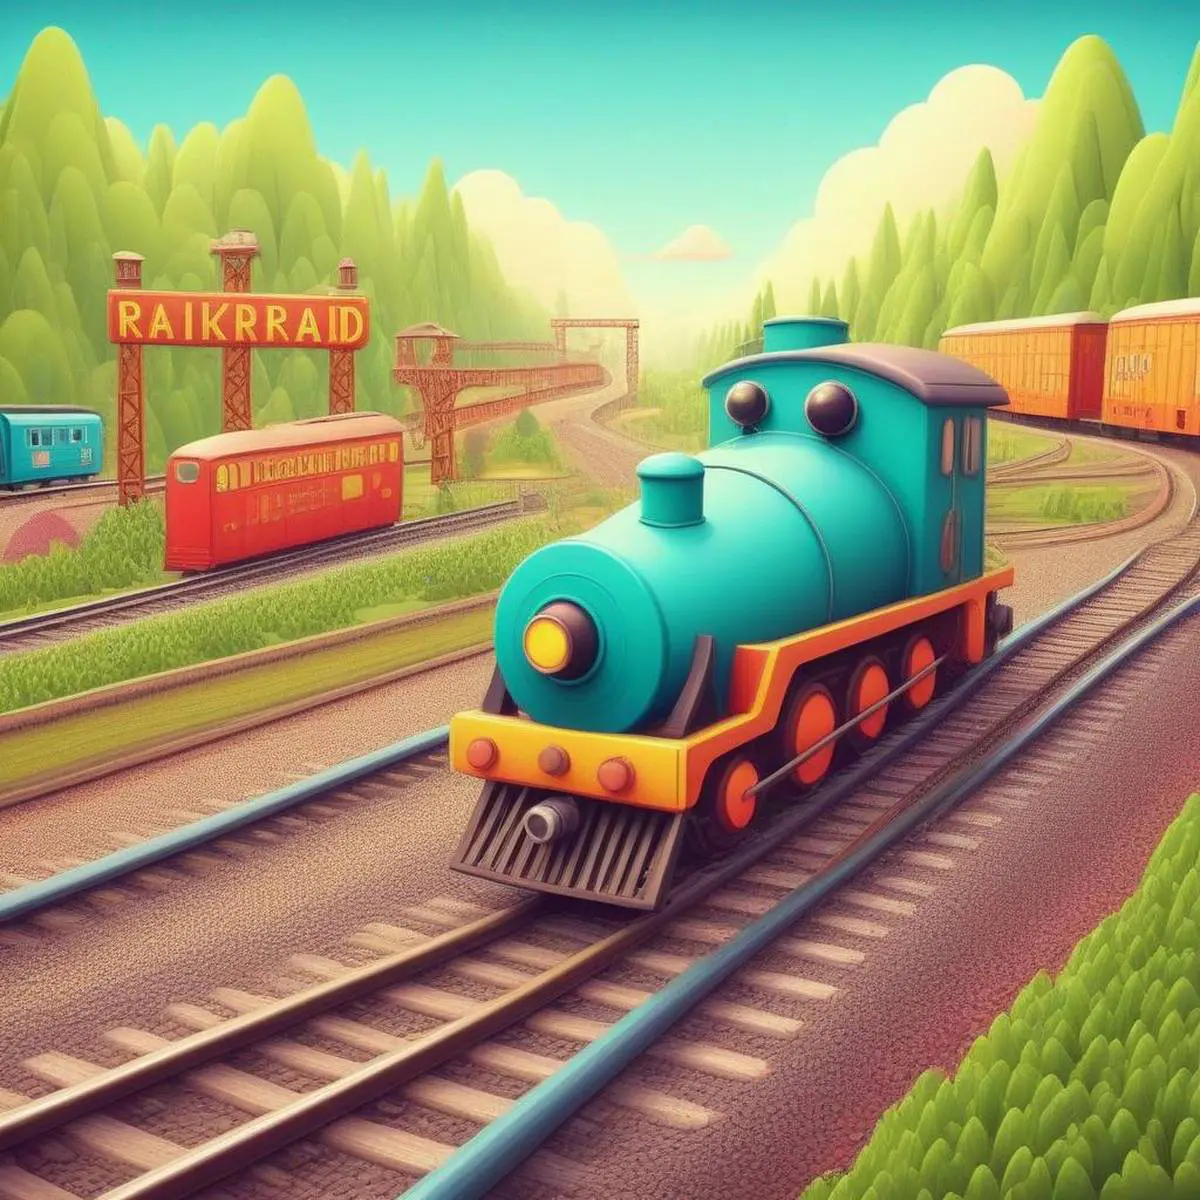 Railroad puns